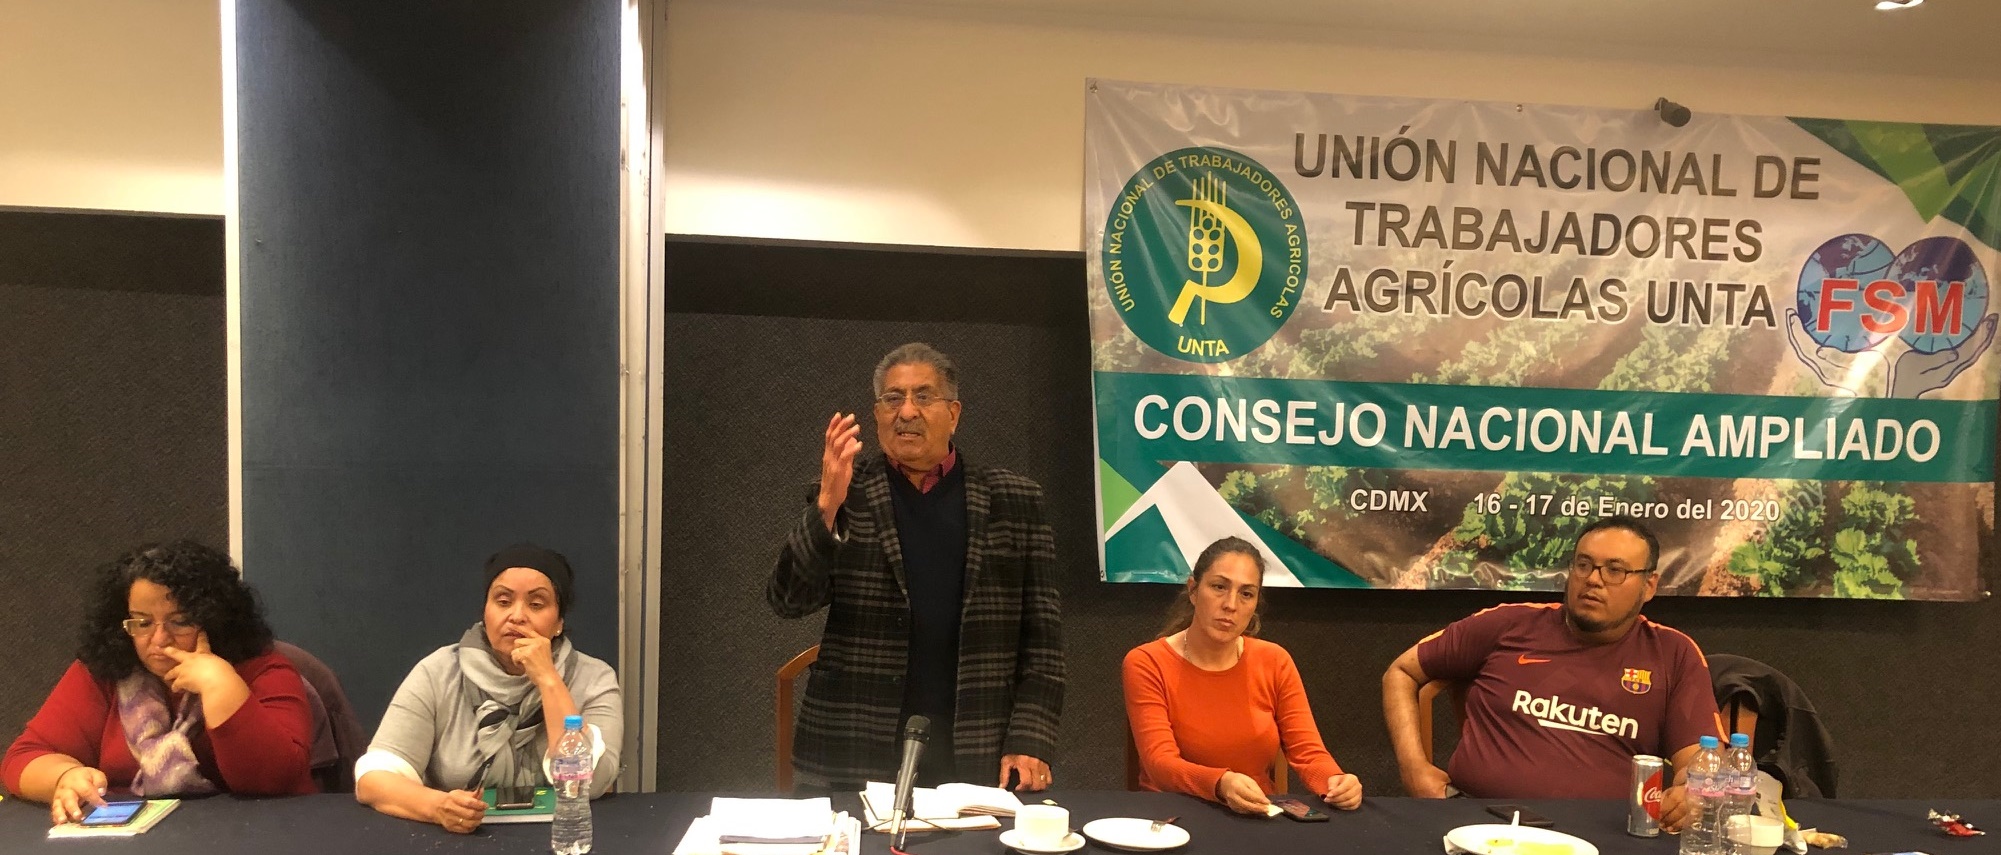 UNTA inicia movilizaciones en tres dependencias del Gobierno de la CDMX